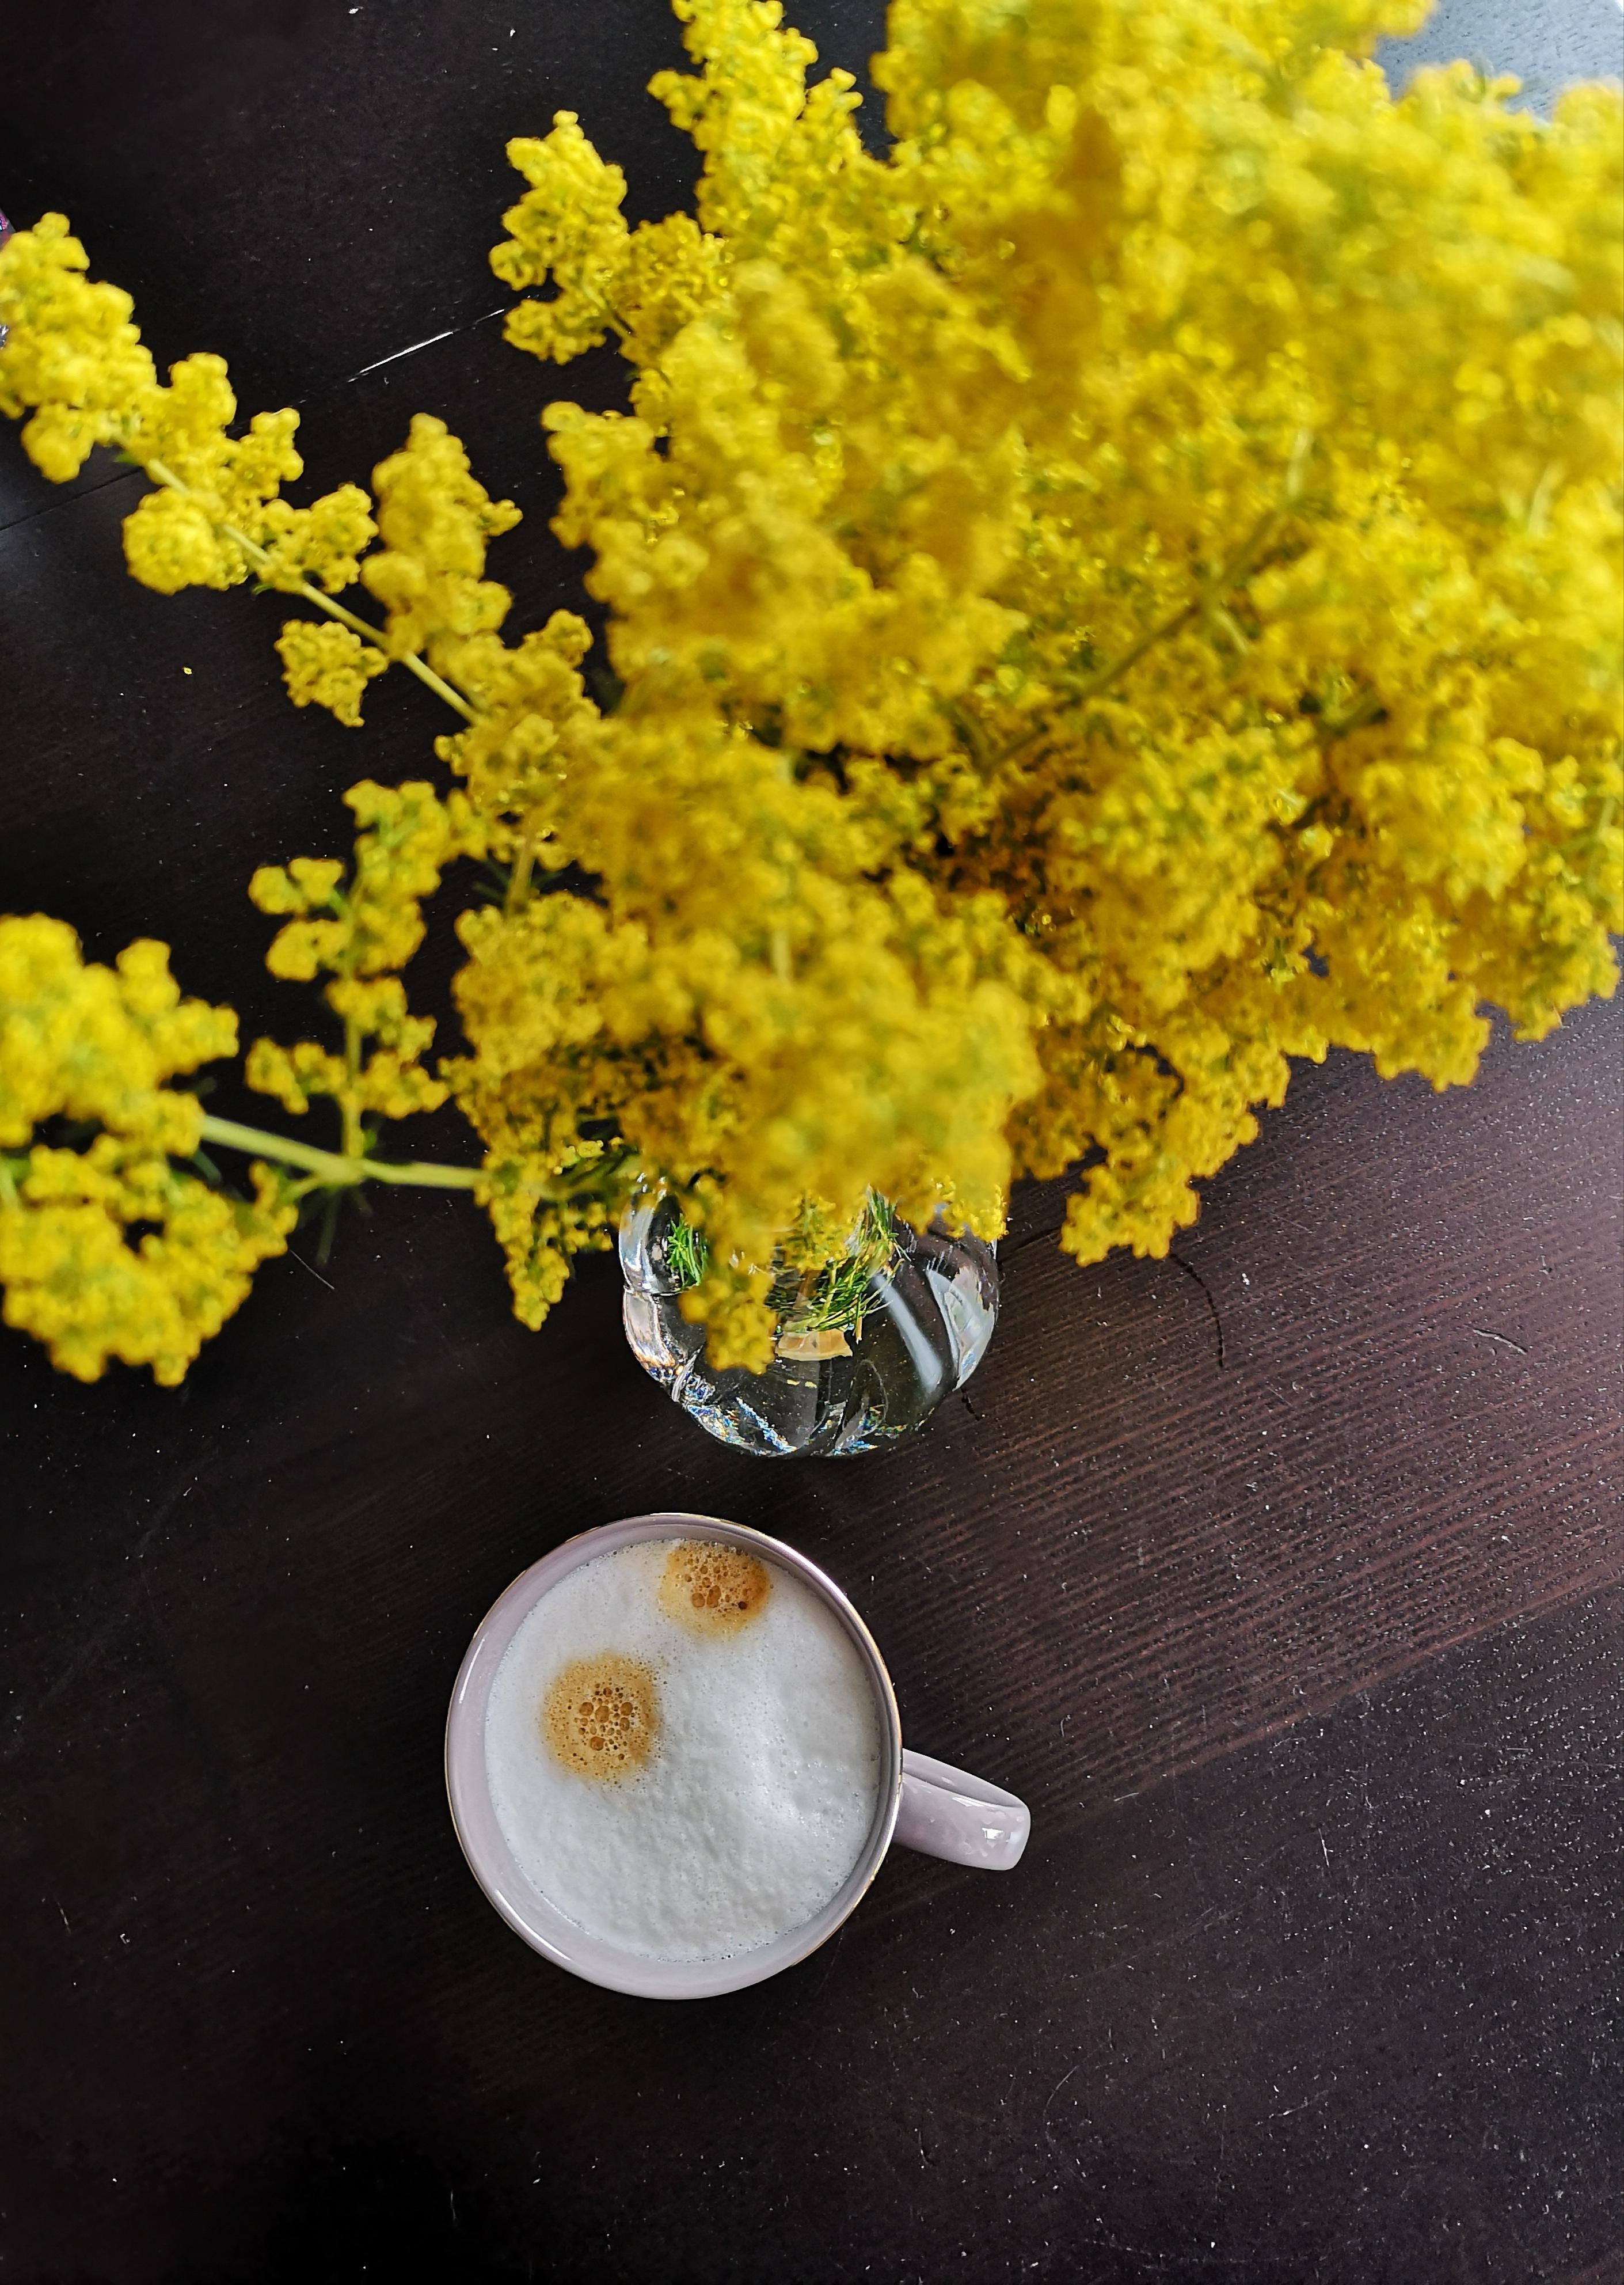 Macht gute Laune... Beides😉
#cappuccino #ackerblumen #golddetails